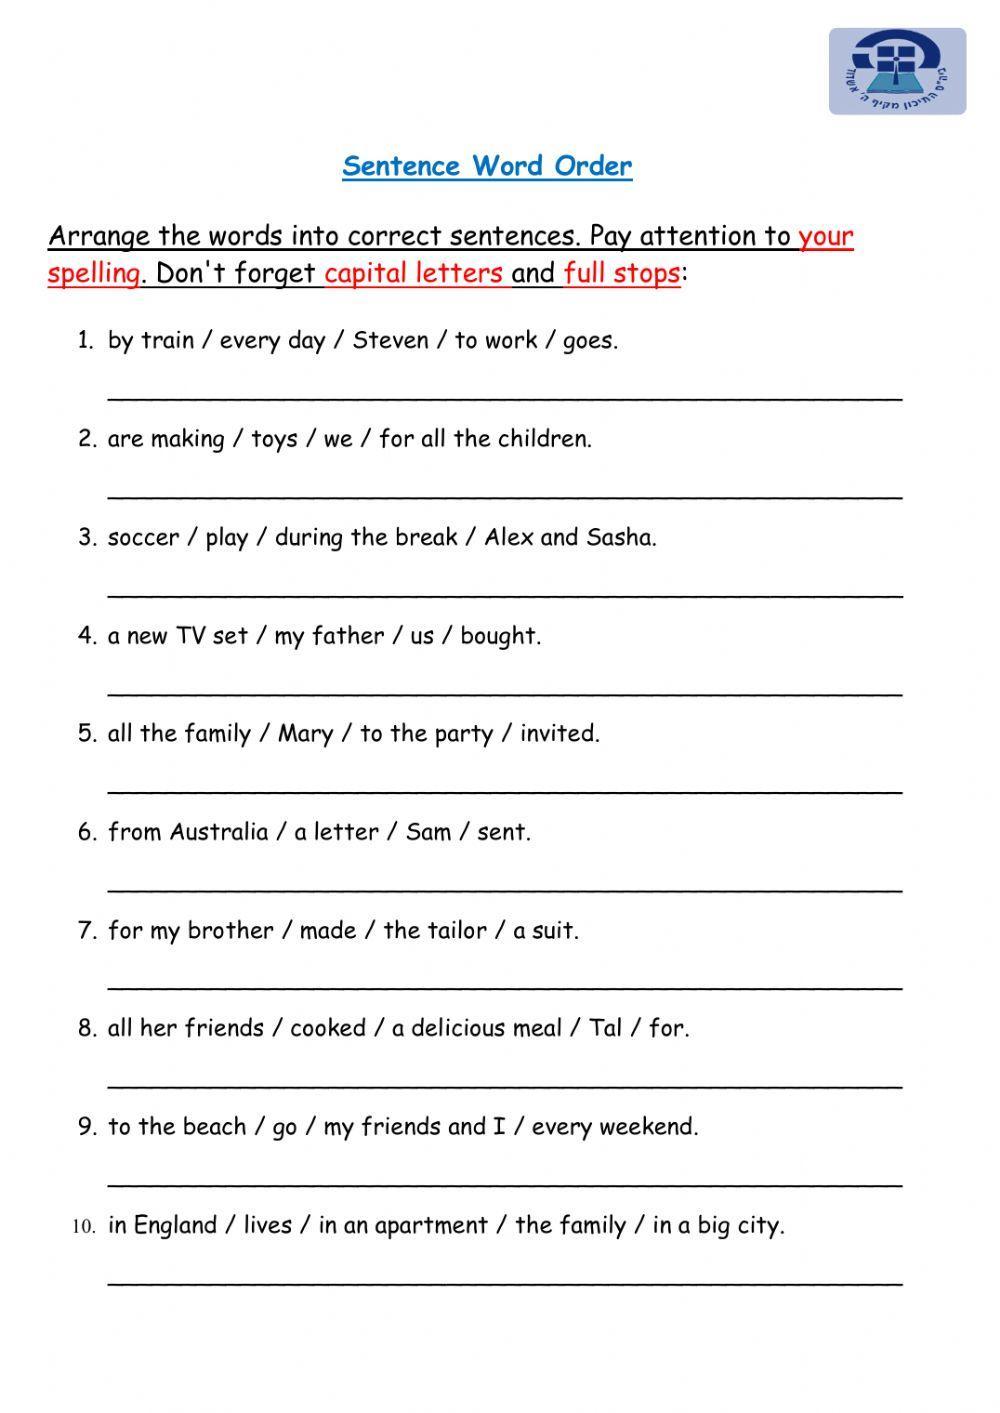 Sentence Word Order Practice Worksheet Live Worksheets